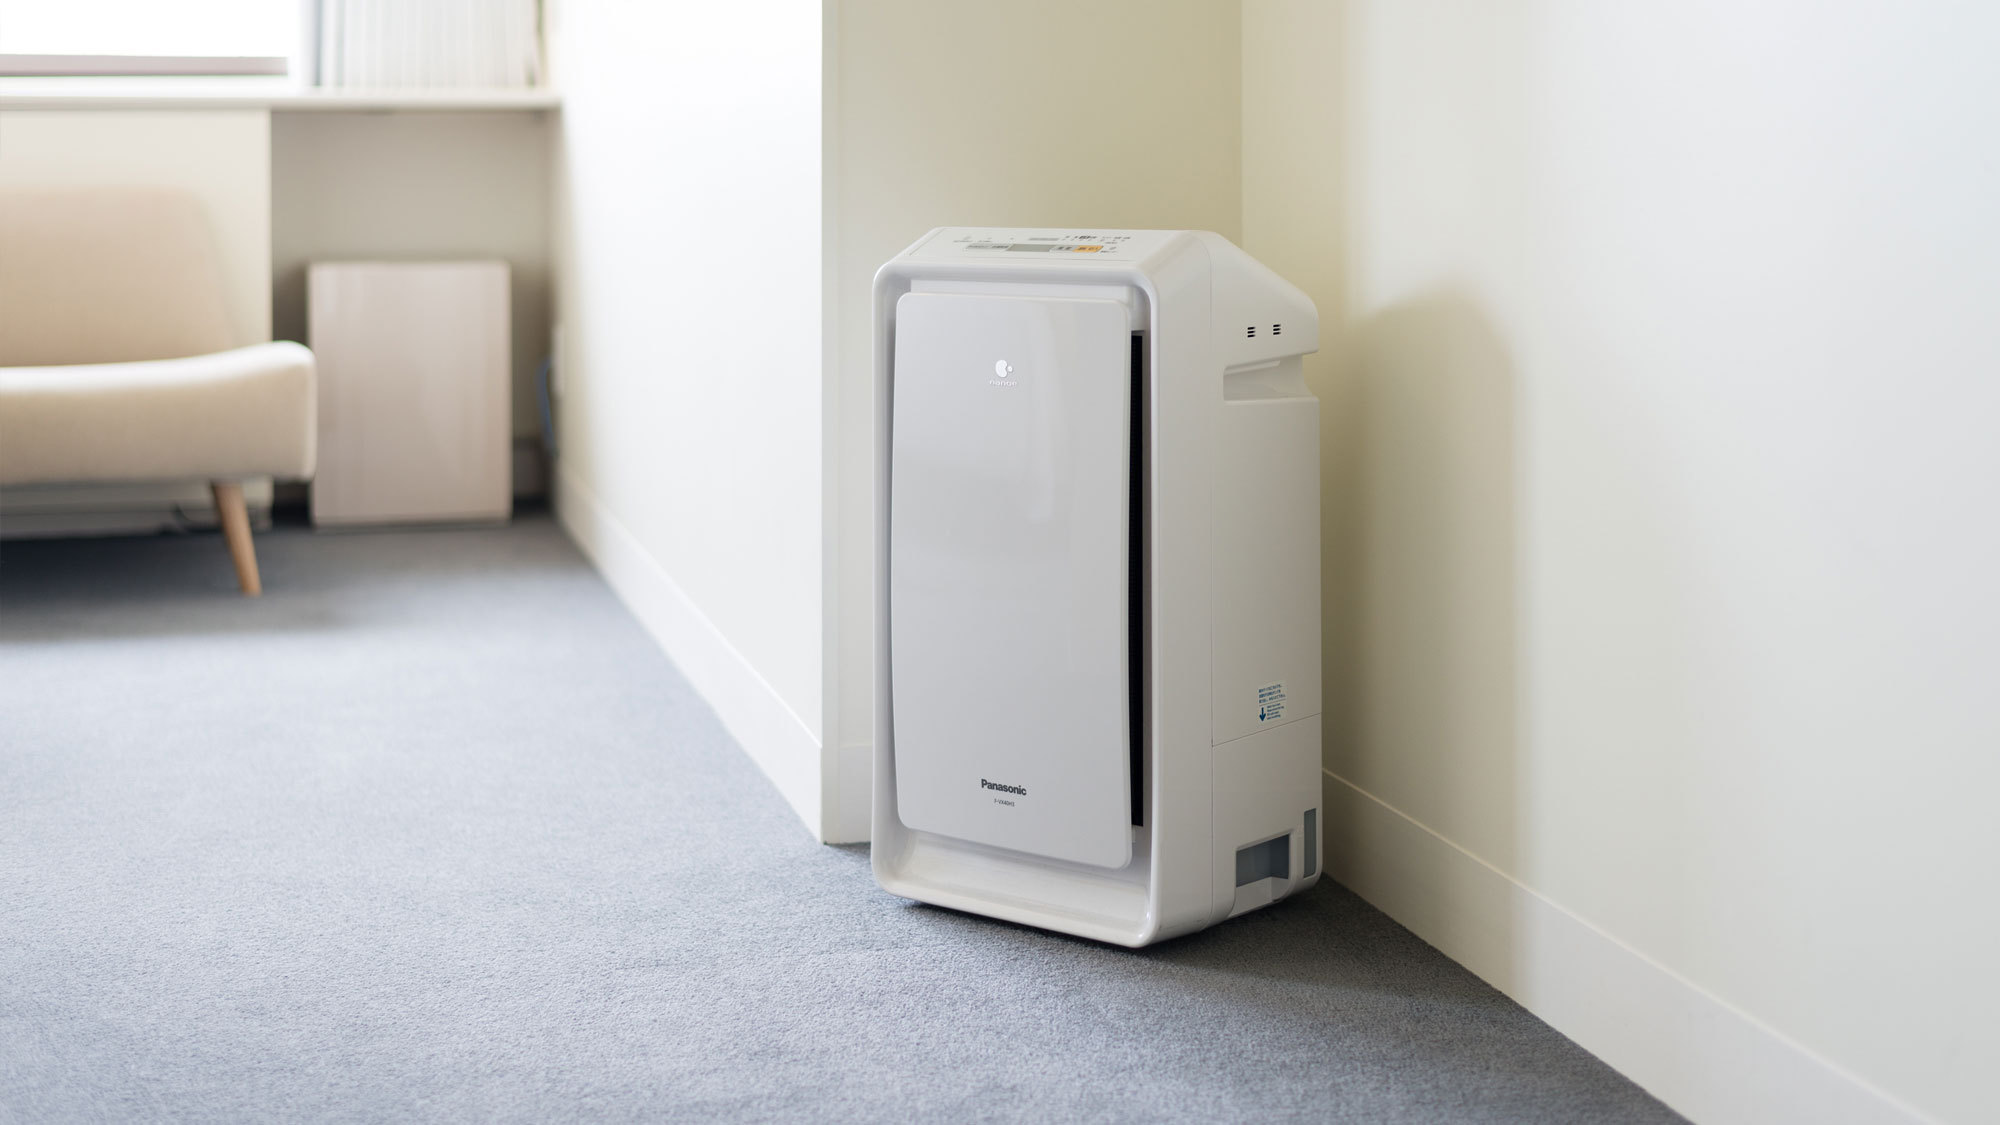  【客室アメニティ】全室に加湿機能付き空気清浄機を完備